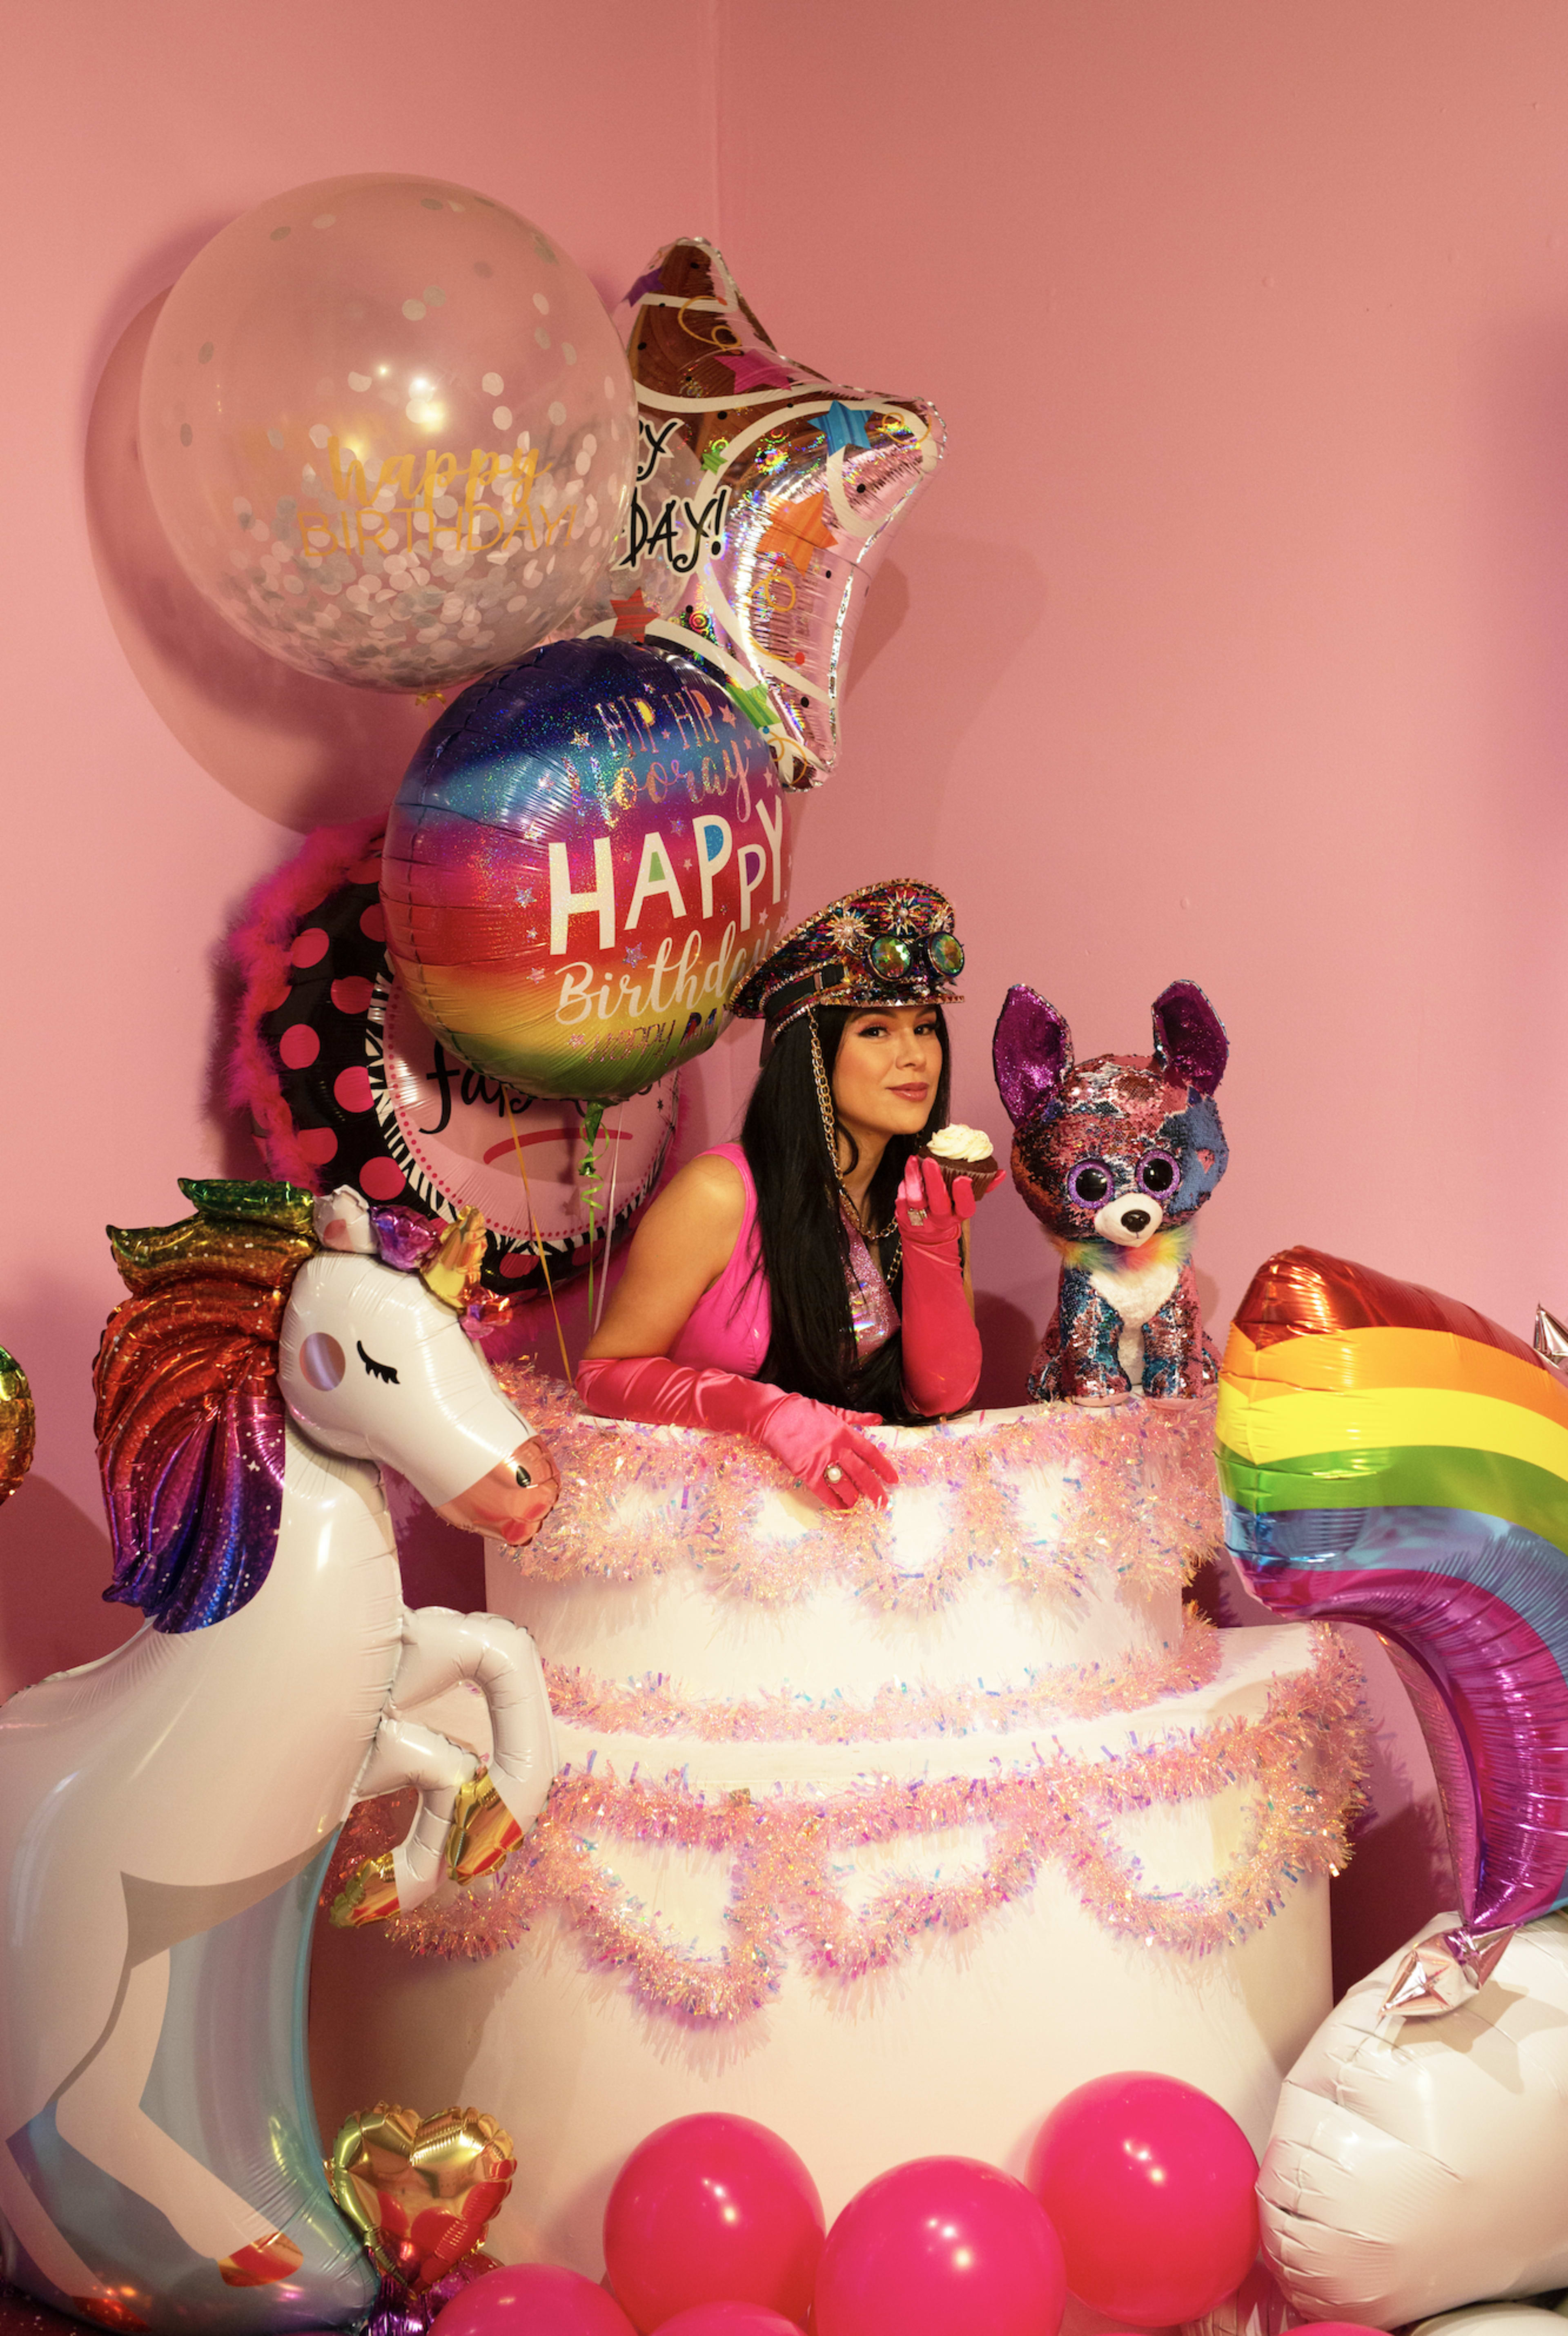 Ein Geburtstags-Fotoshooting zum Thema Einhorn mit einer Frau, die auf einer von Luftballons umgebenen Torte sitzt.